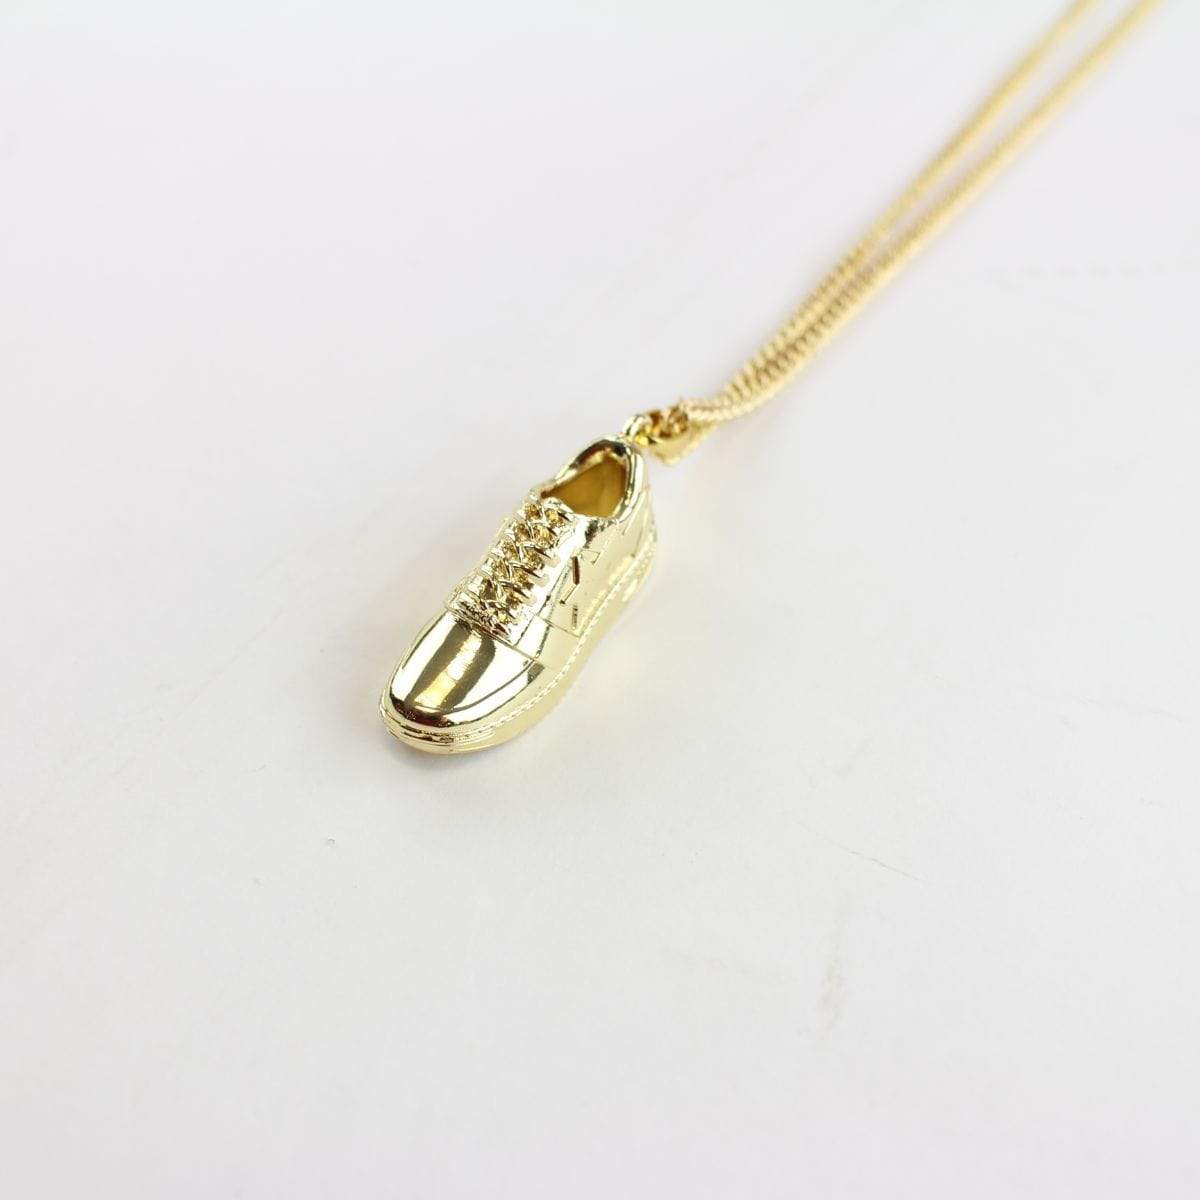 Bapesta Gold Pendant Necklace - SaruGeneral